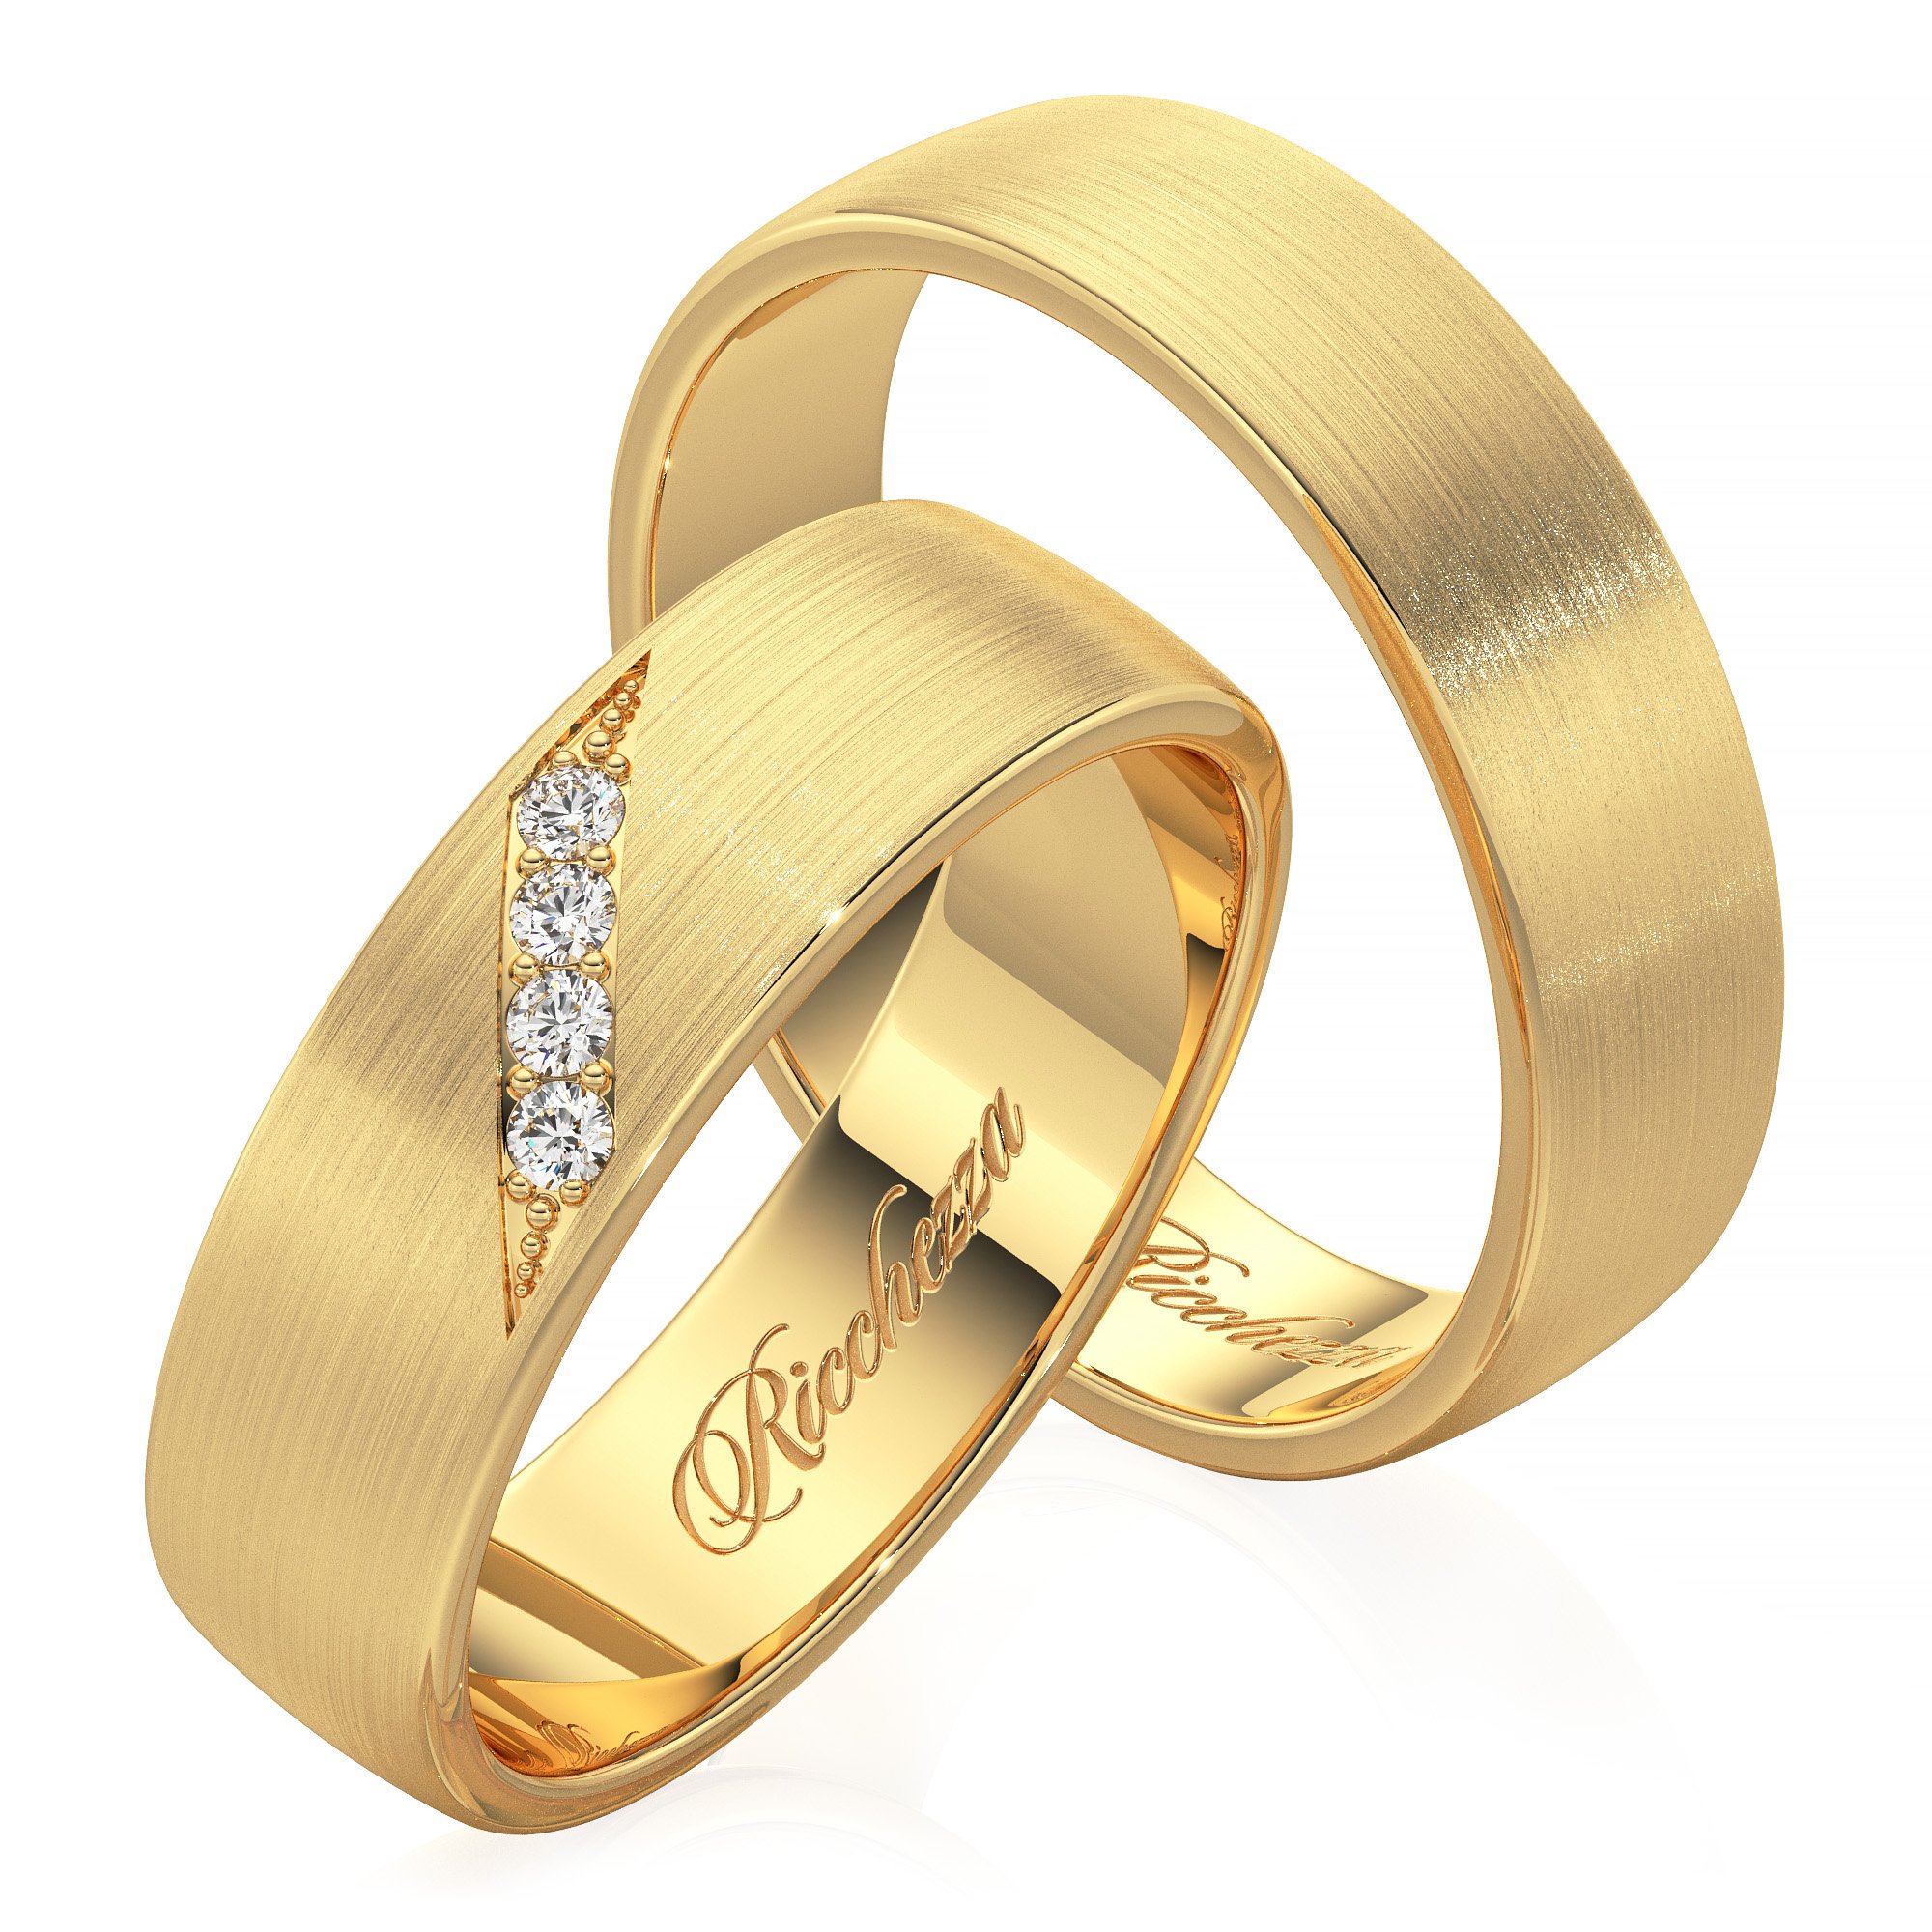 Золотые обручальные кольца 585 проба. Кольца обручальные парные золотые Адамас. Обручальные кольца 585. Обручальные кольца парные 585. Золотые кольца обручалки 585 пробы.